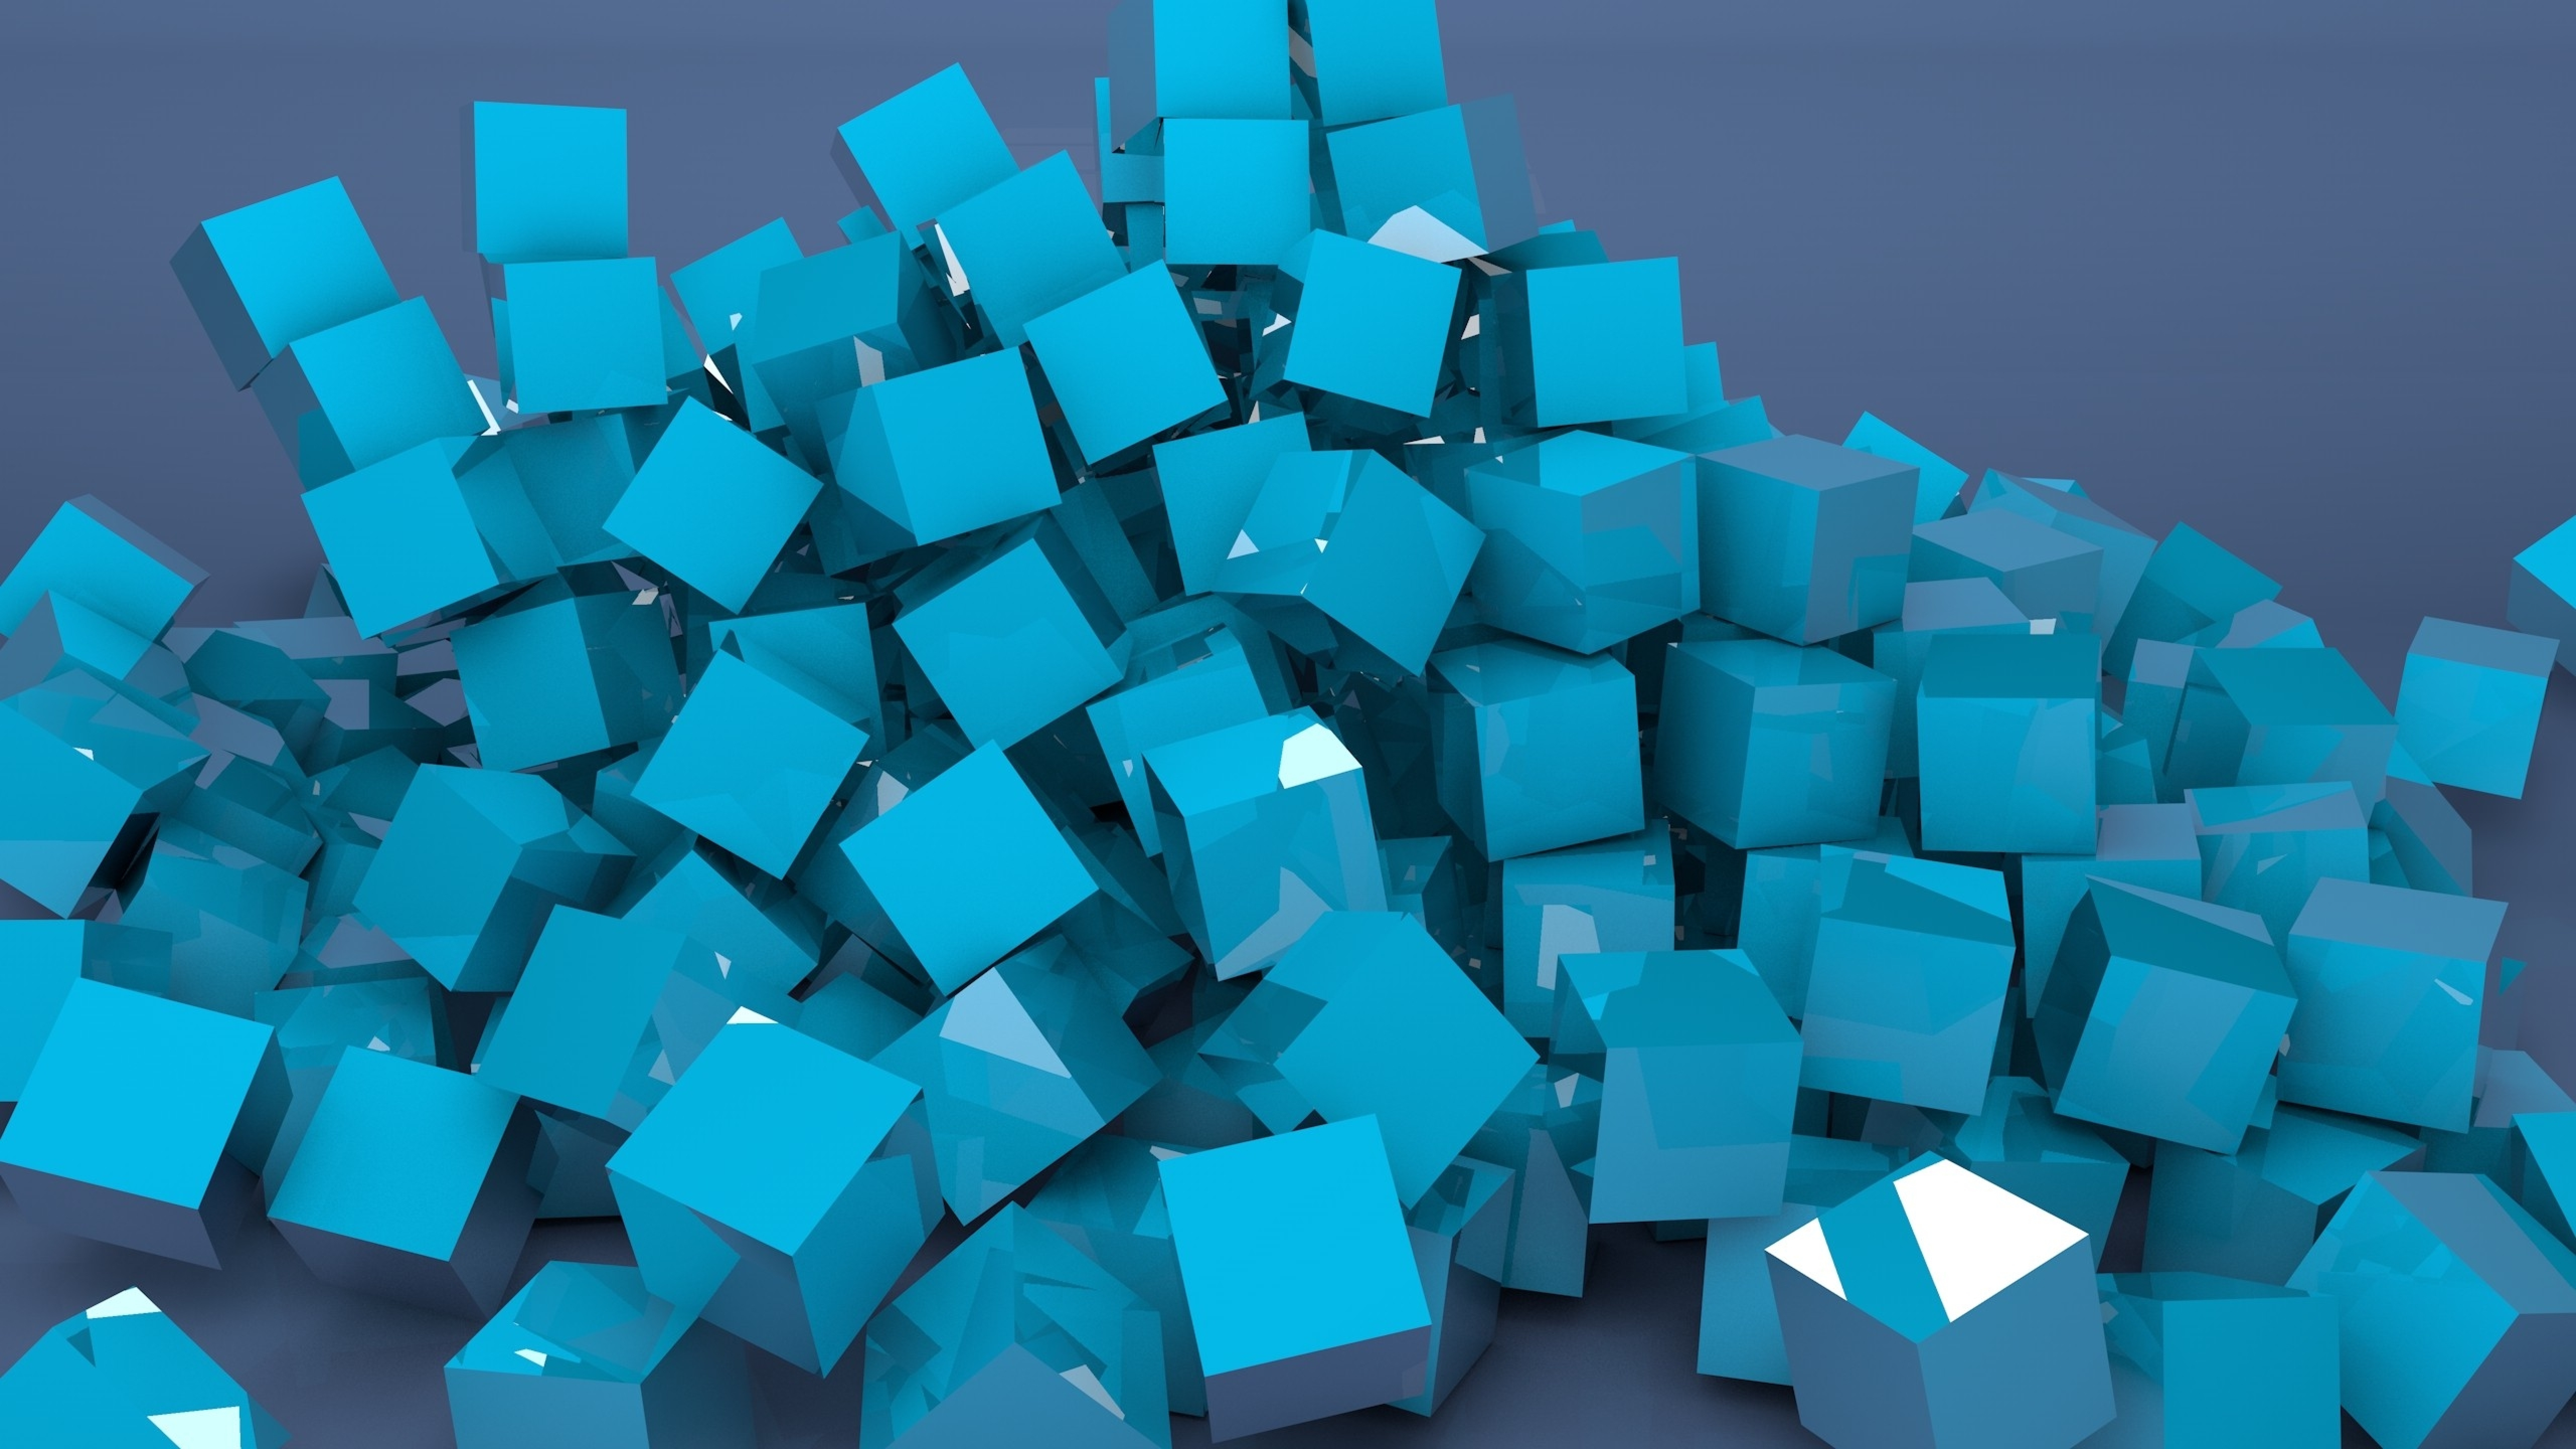 D cubes. Синий кубик. 3д кубик. Кубики бирюзовые. Разноцветные кубики.